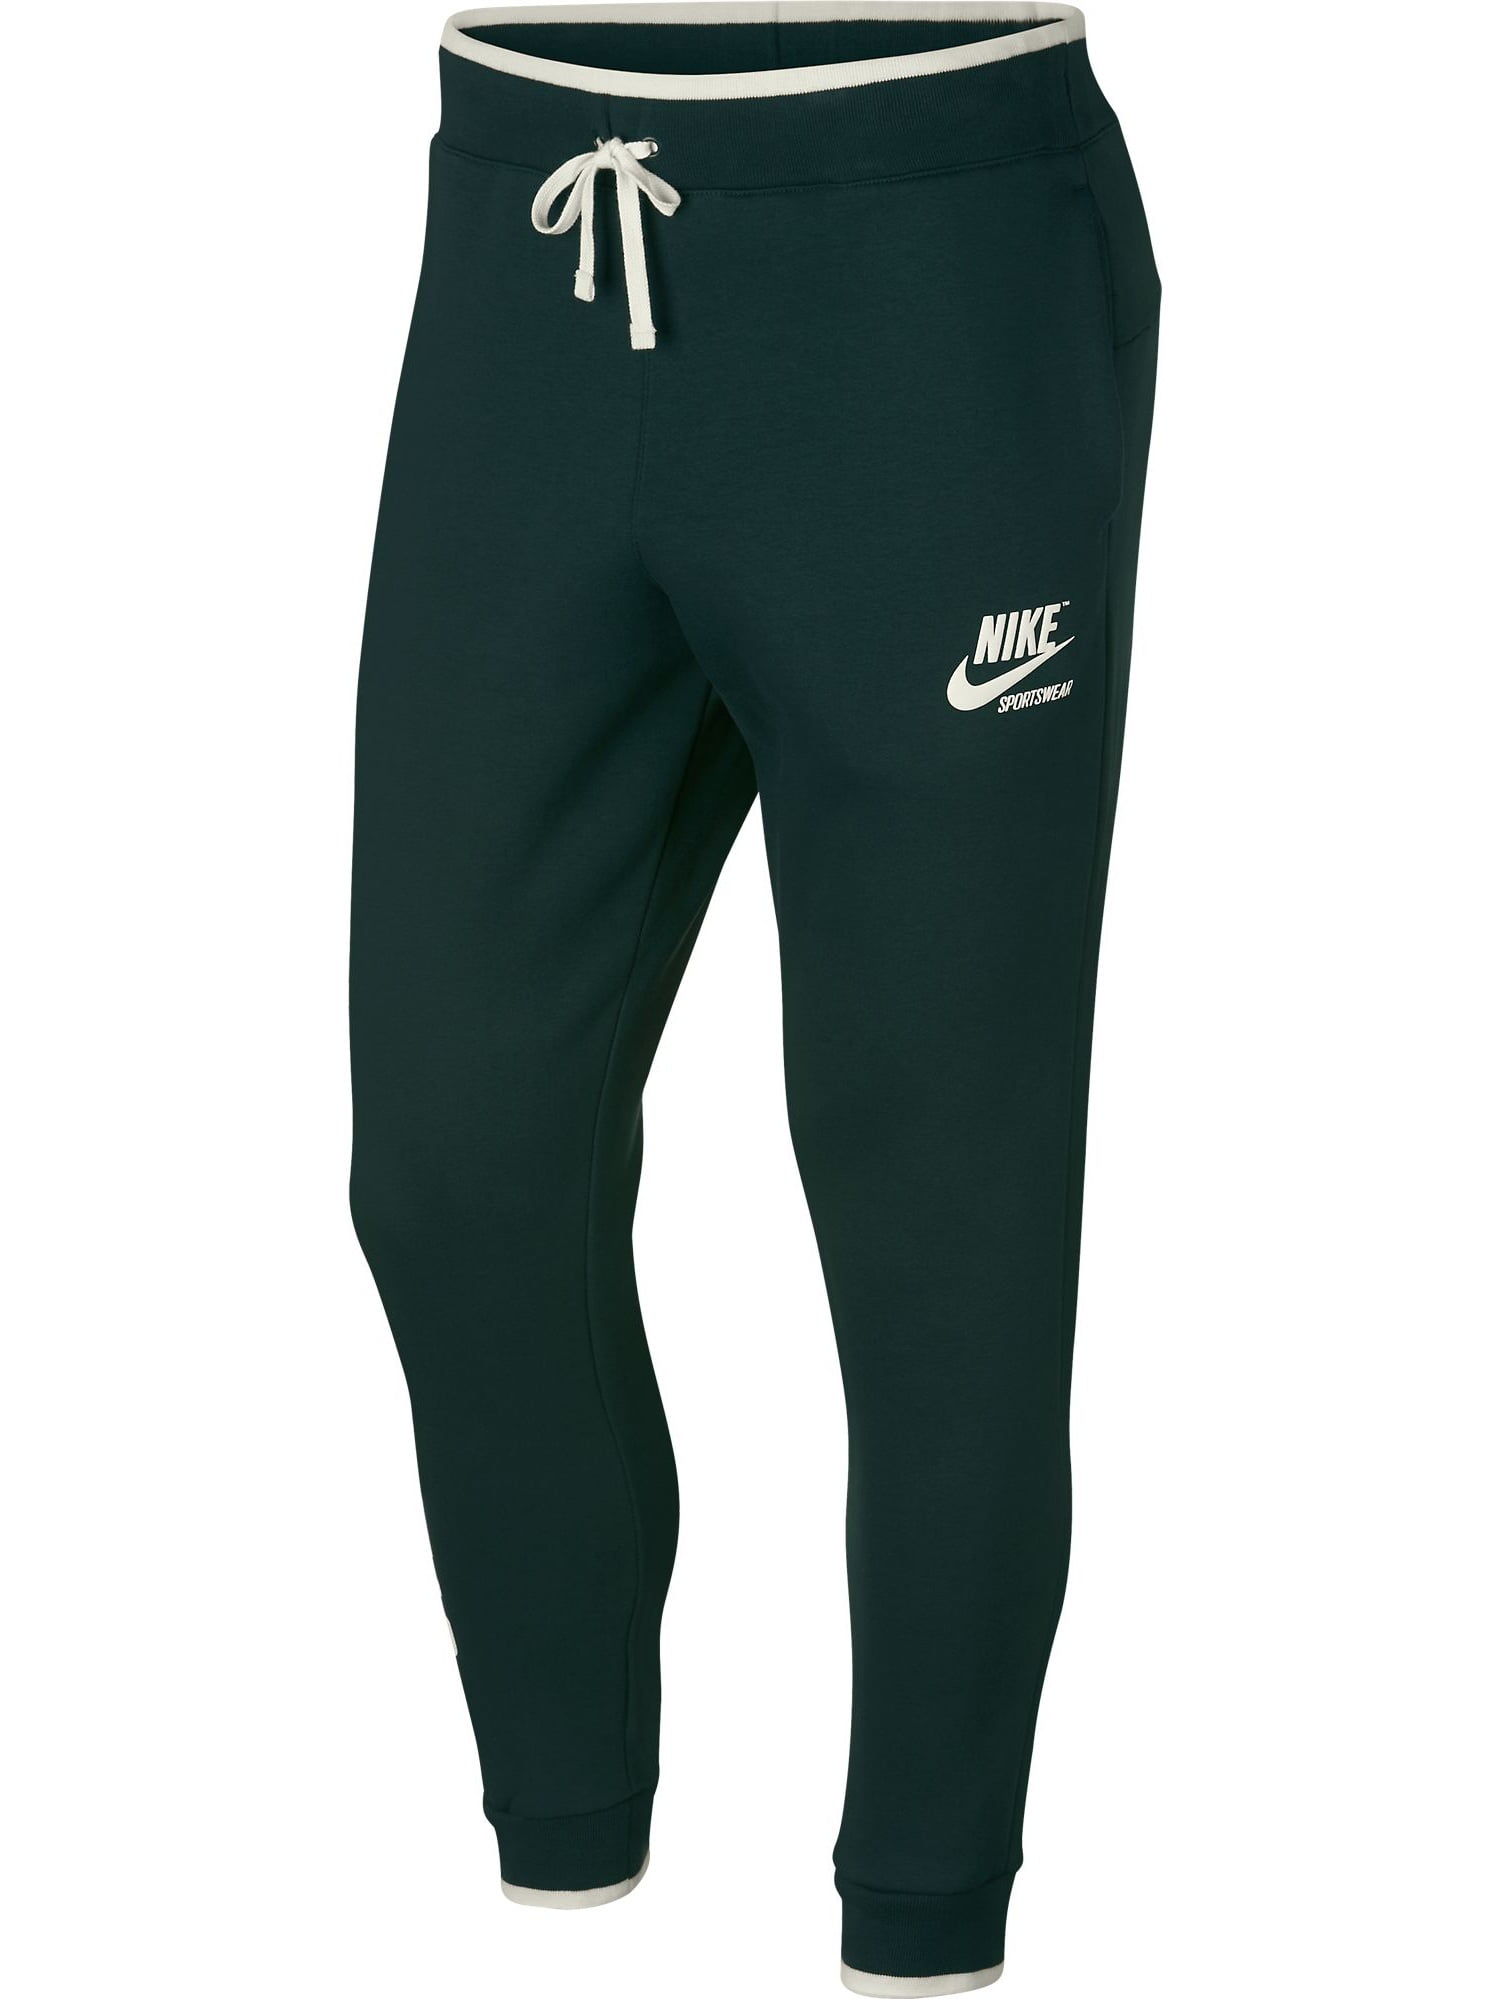 Nike Sportswear NSW Archive Jogger Pants - Walmart.com